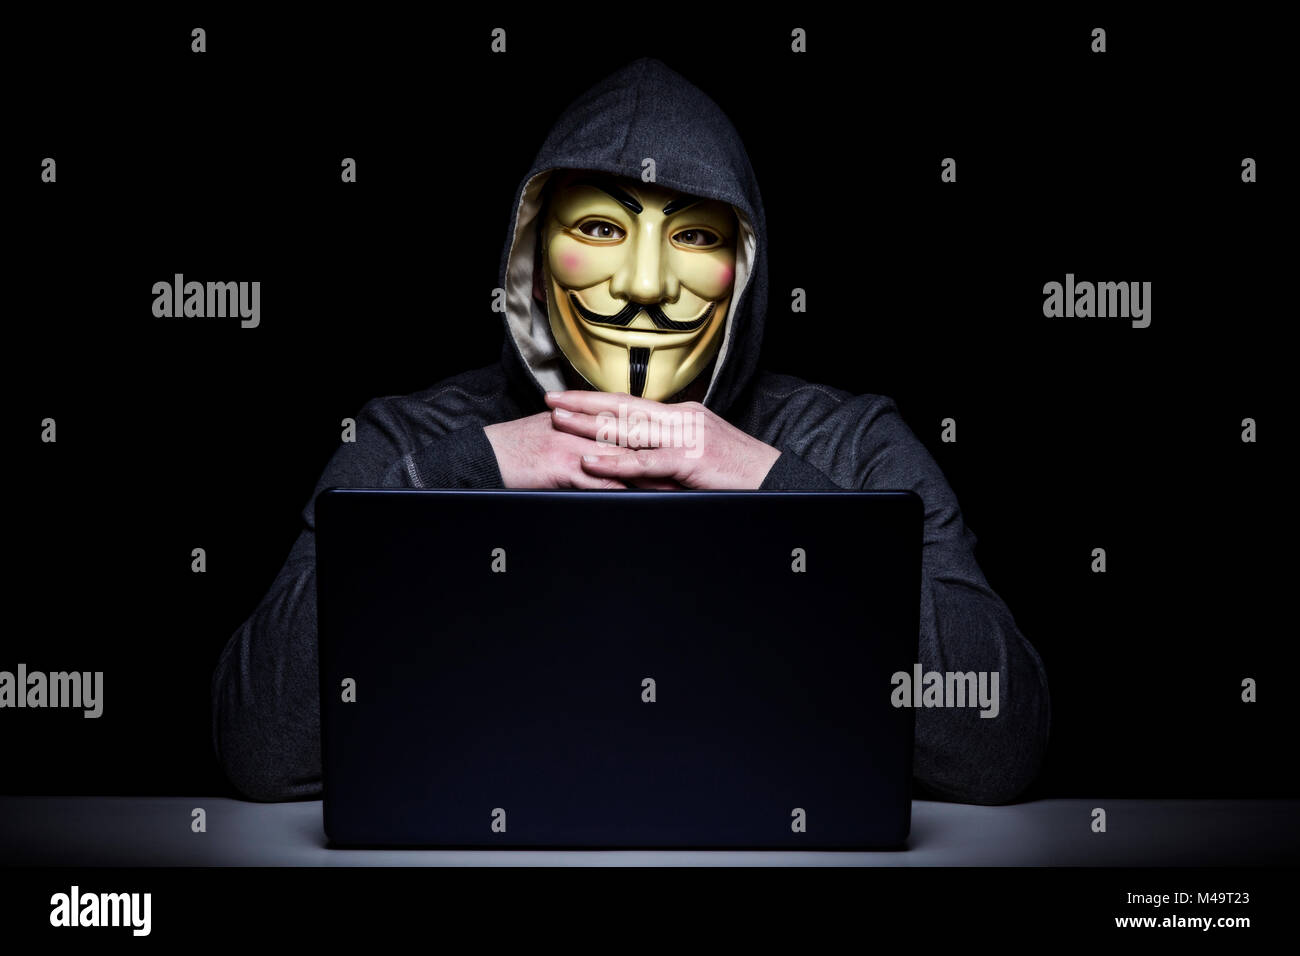 Mailand, Italien, Februar 2018: Hacker Verschleiß anonymus Maske mit Notebook im Dunkeln. Editorial Foto. Stockfoto